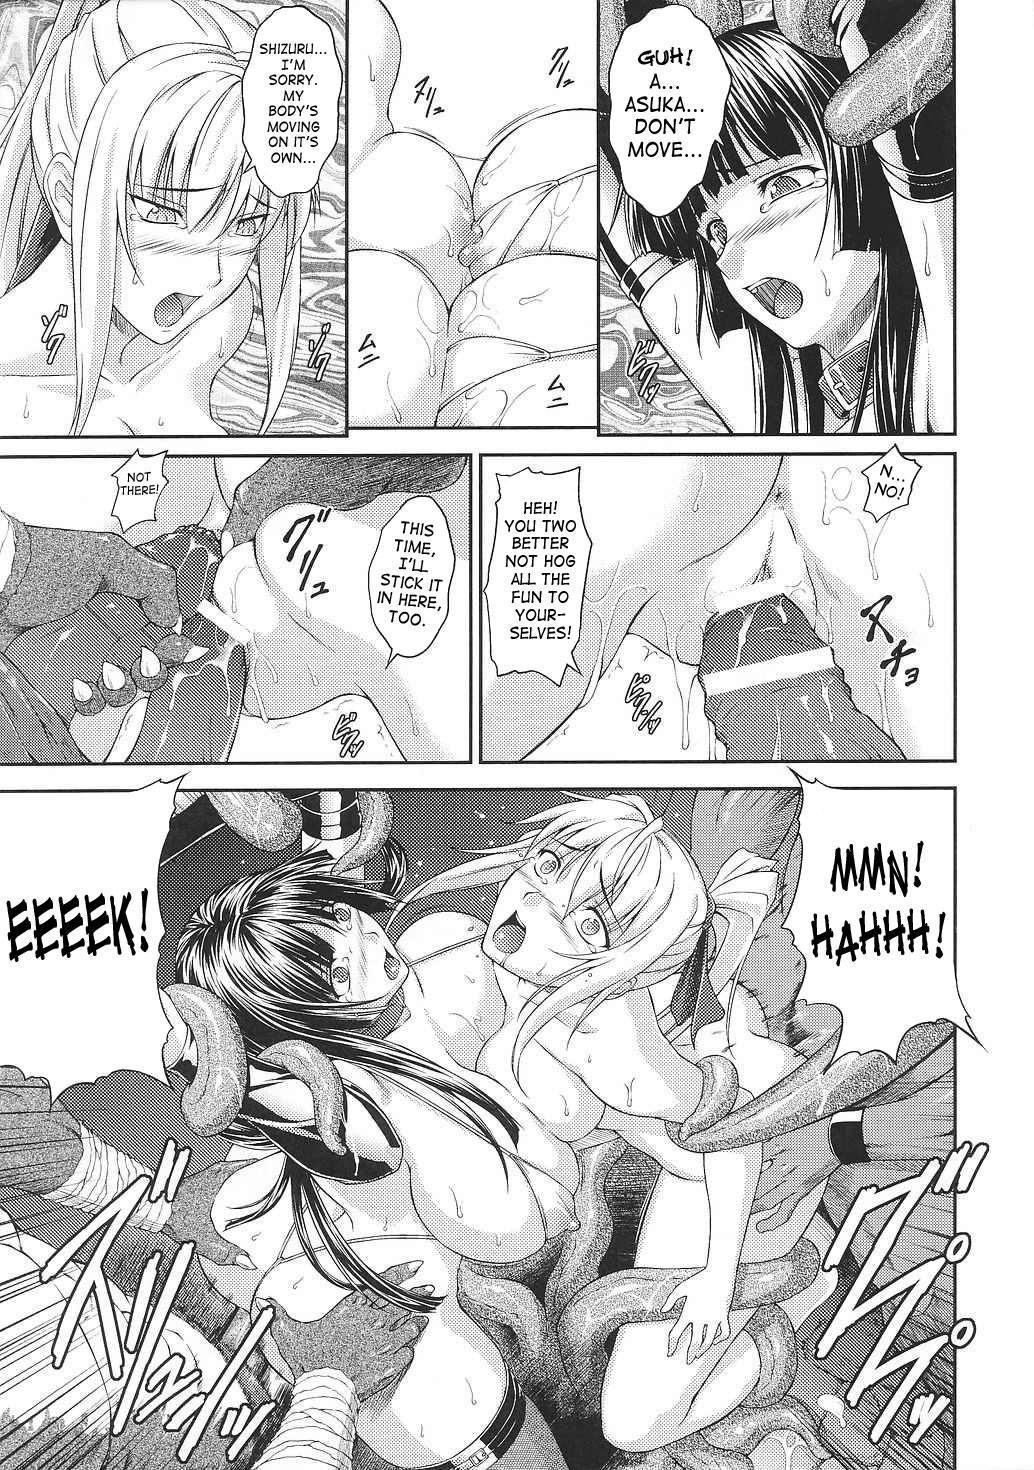 Asuka and Shizuru 101 hentai manga